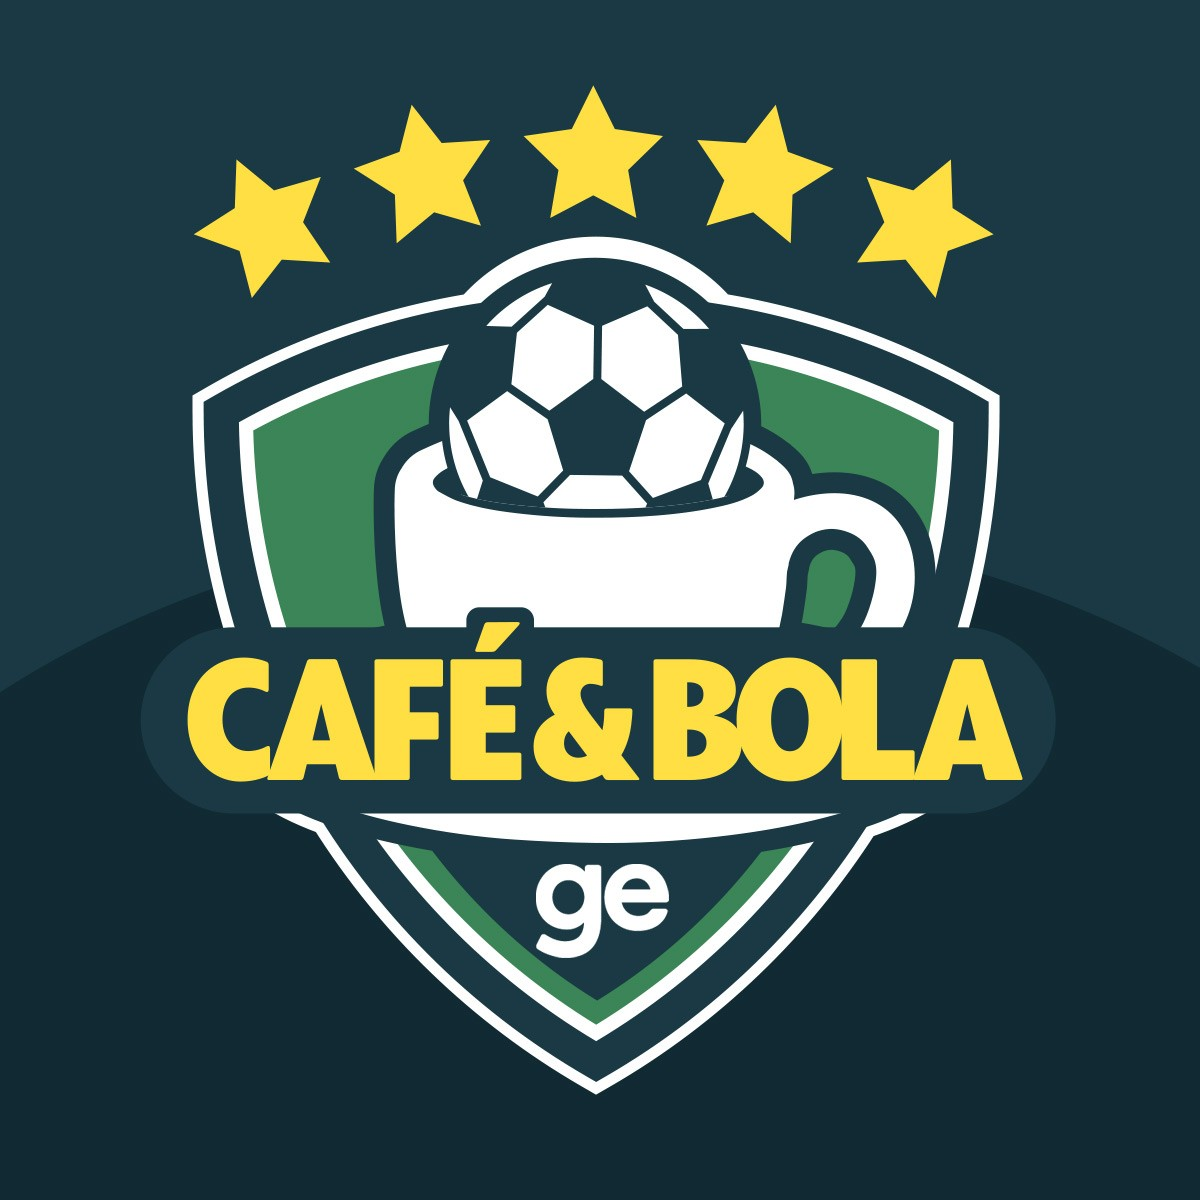 Café&Bola #53 - Adeus ano velho - Flamengo, papa títulos, mira o Mundial e Vasco de volta à Série A com roteiro de puro entretenimento